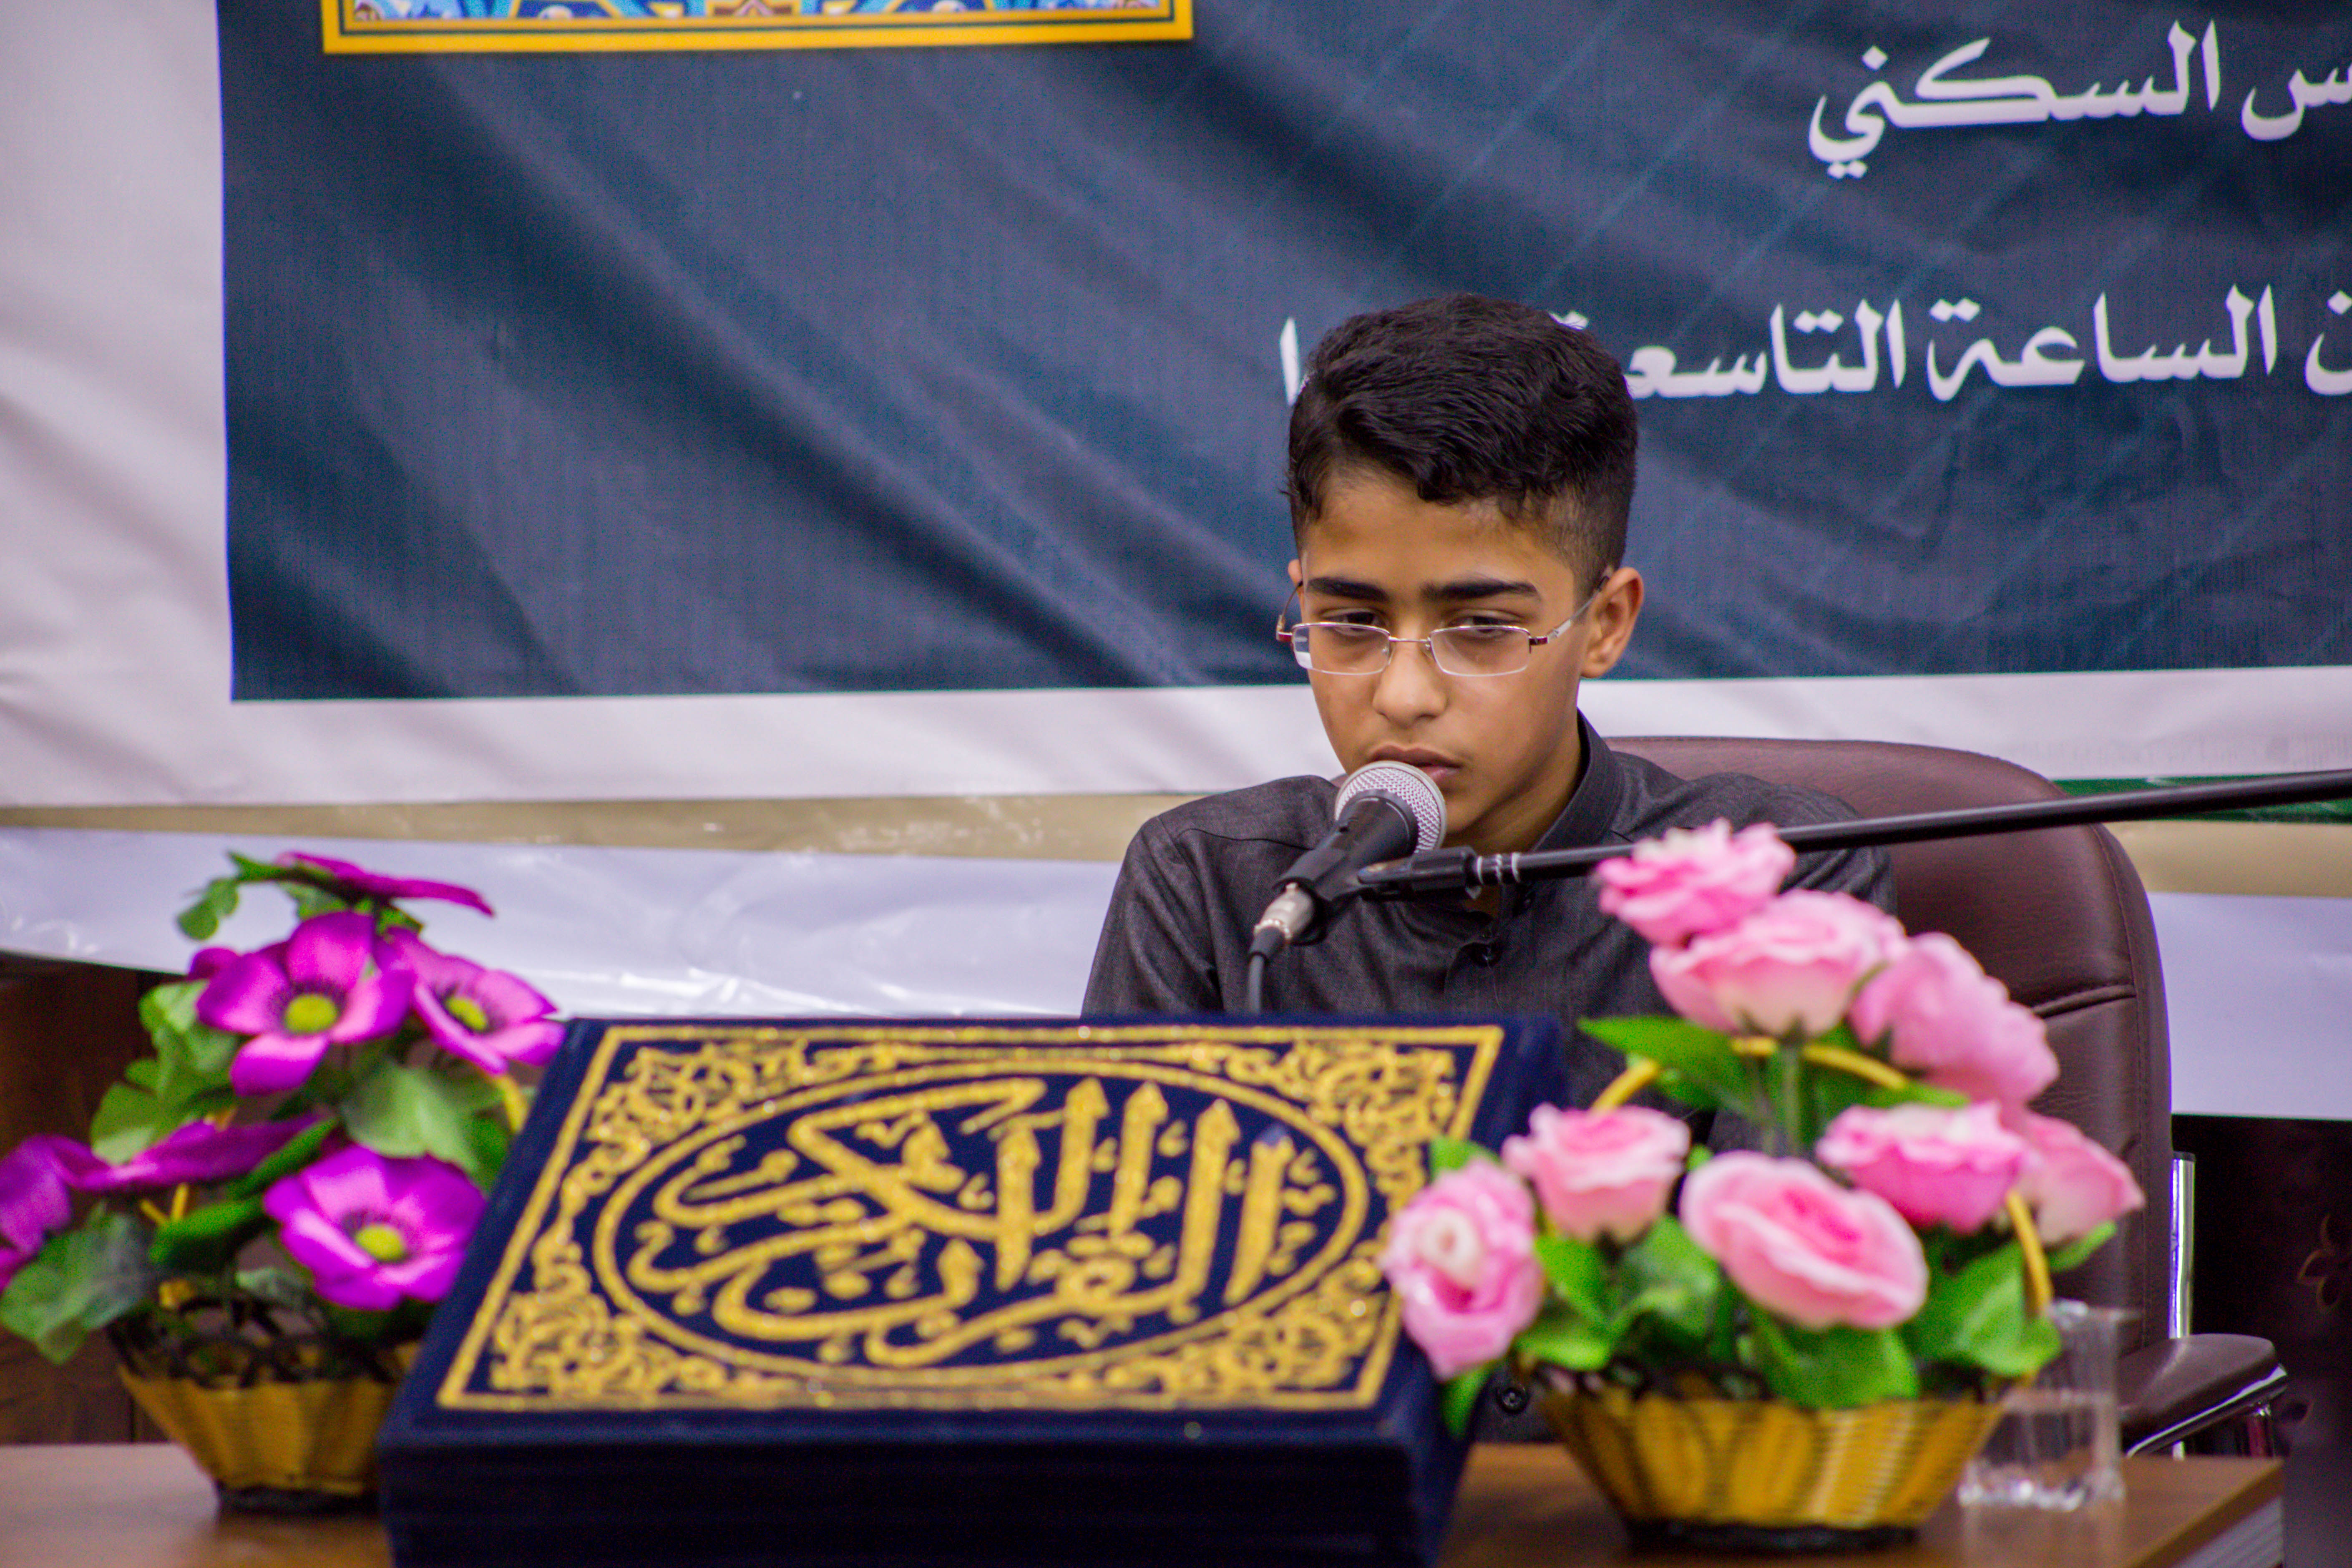 وحدة التحفيظ تطلق المسابقة القرآنية التمهيدية الثانية في حفظ القرآن الكريم